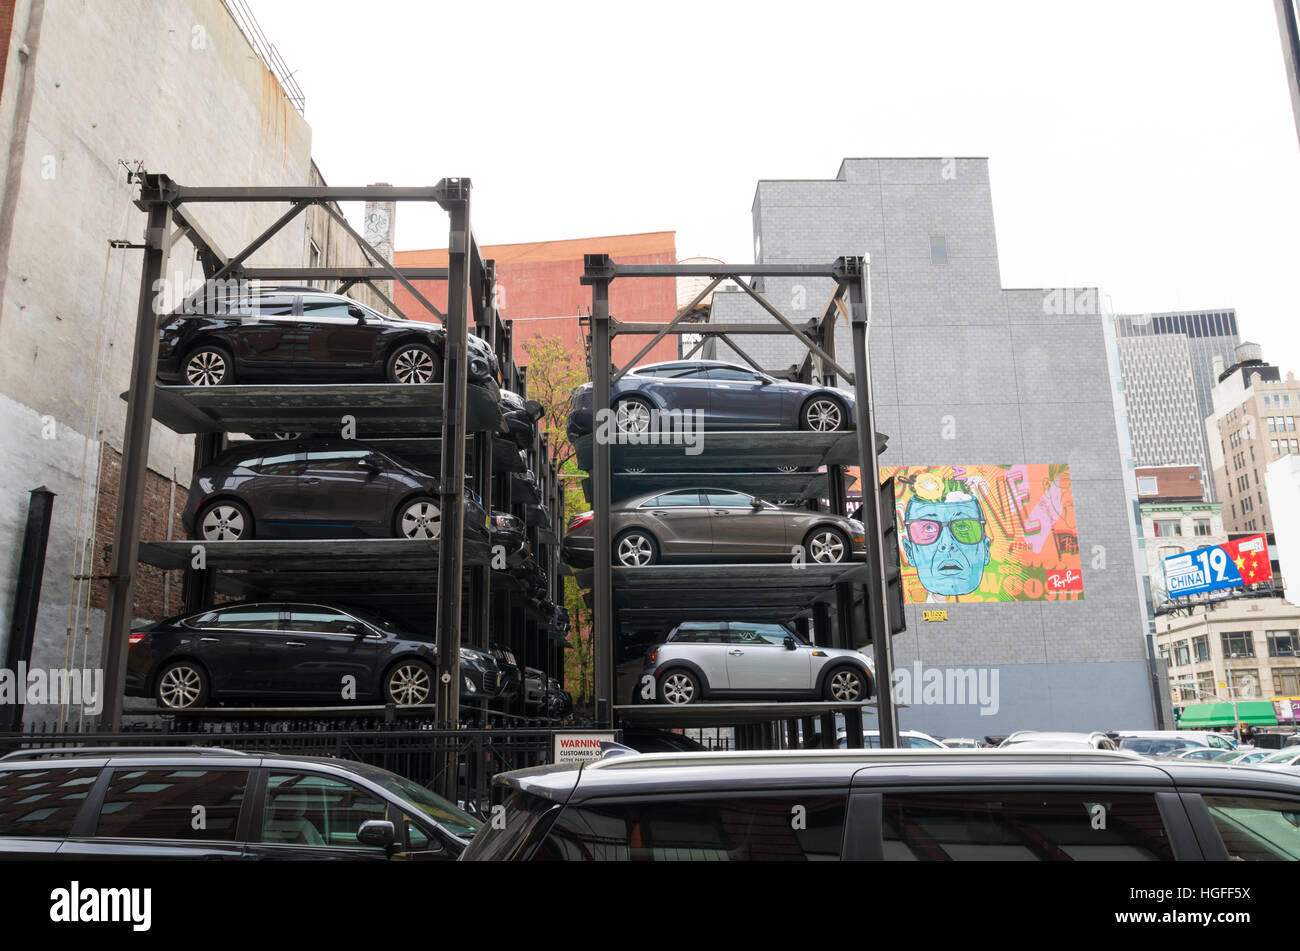 NEW YORK CITY - Aprile 29, 2016: a causa della mancanza di spazio le macchine vengono parcheggiate su elevati i posti di parcheggio in Little Italy, un quartiere di Manhattan Foto Stock